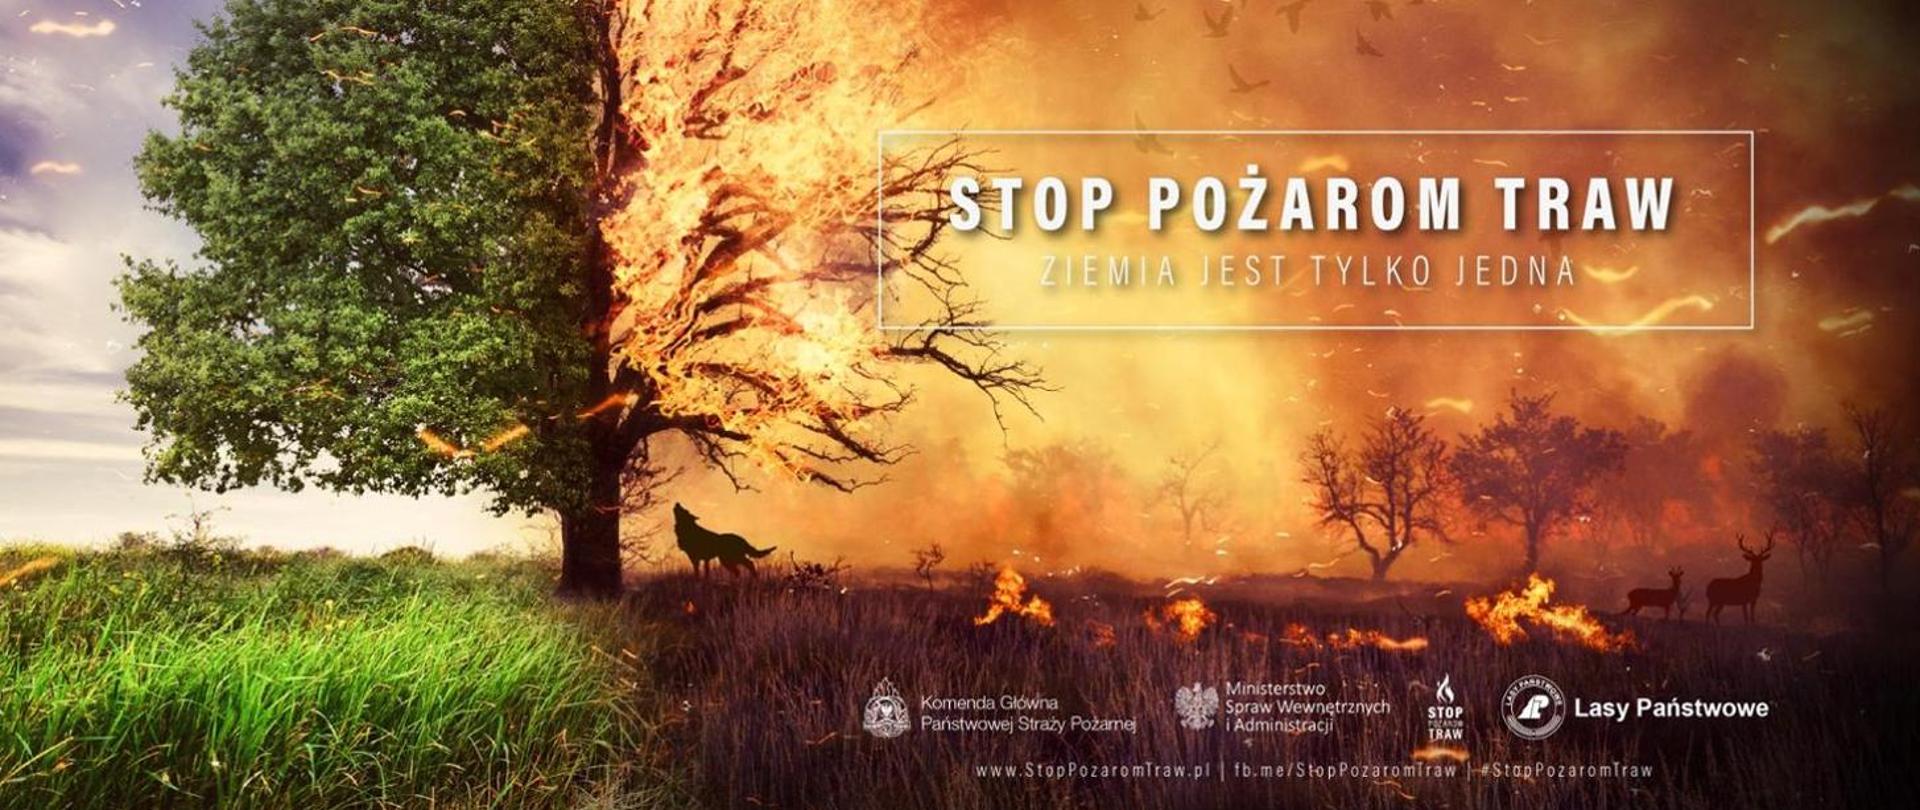 Zdjęcie promujące kampanie stop pożarom traw przedstawia obraz podzielony na pół z jednej strony drzewo oraz łąka przed pożarem po drugiej stronie spalony obszar.